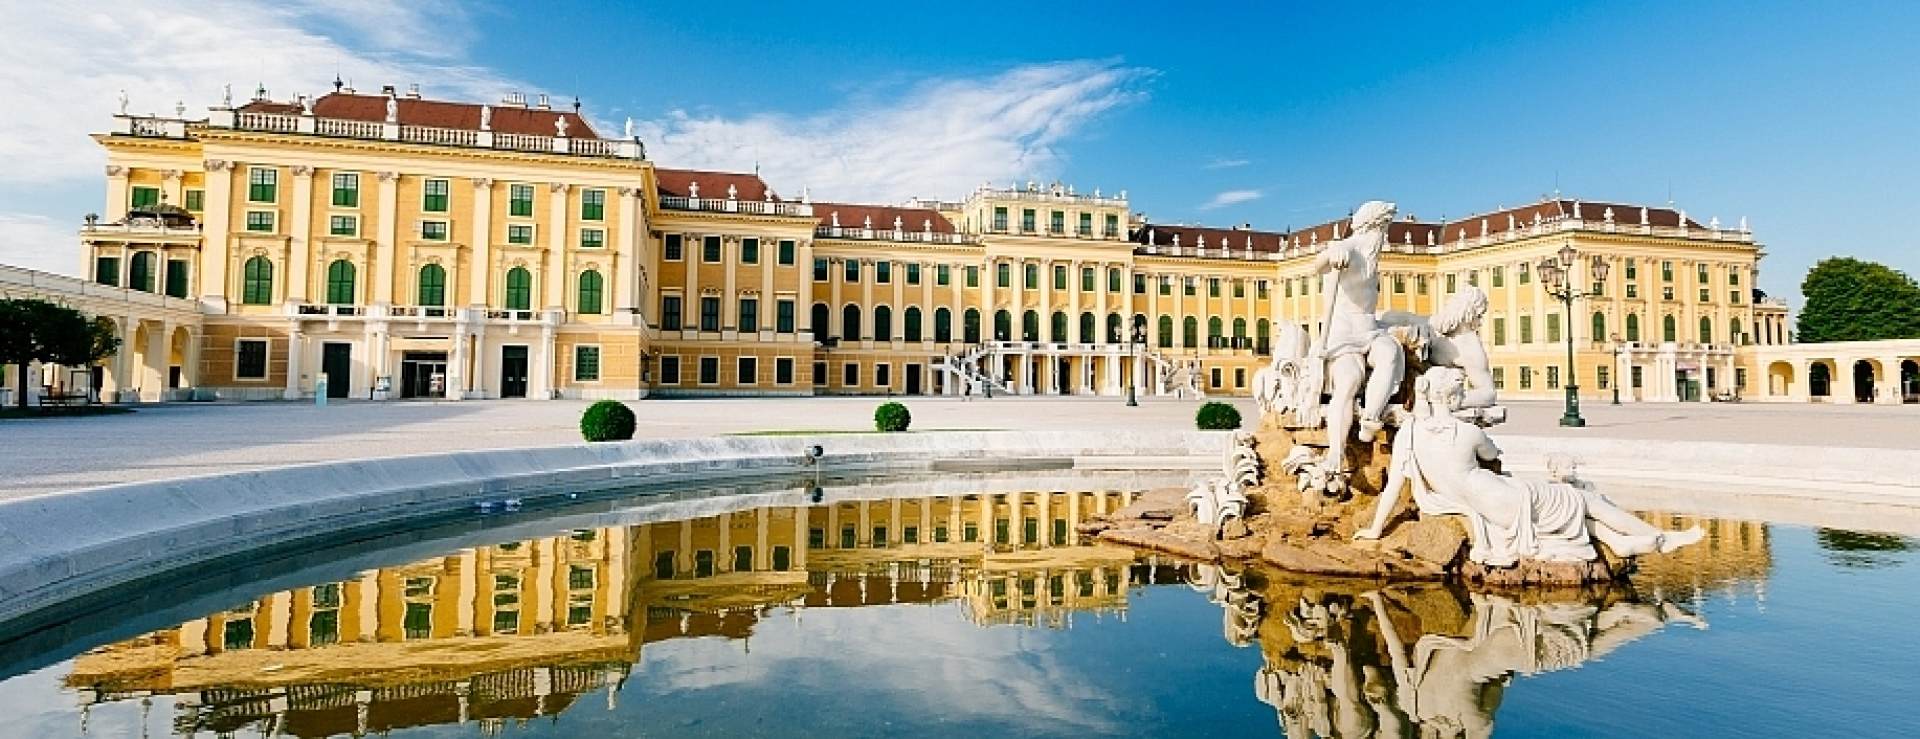 Crucero por el río Danubio Azul en Viena, cena y concierto en el Palacio Imperial de Schönbrunn